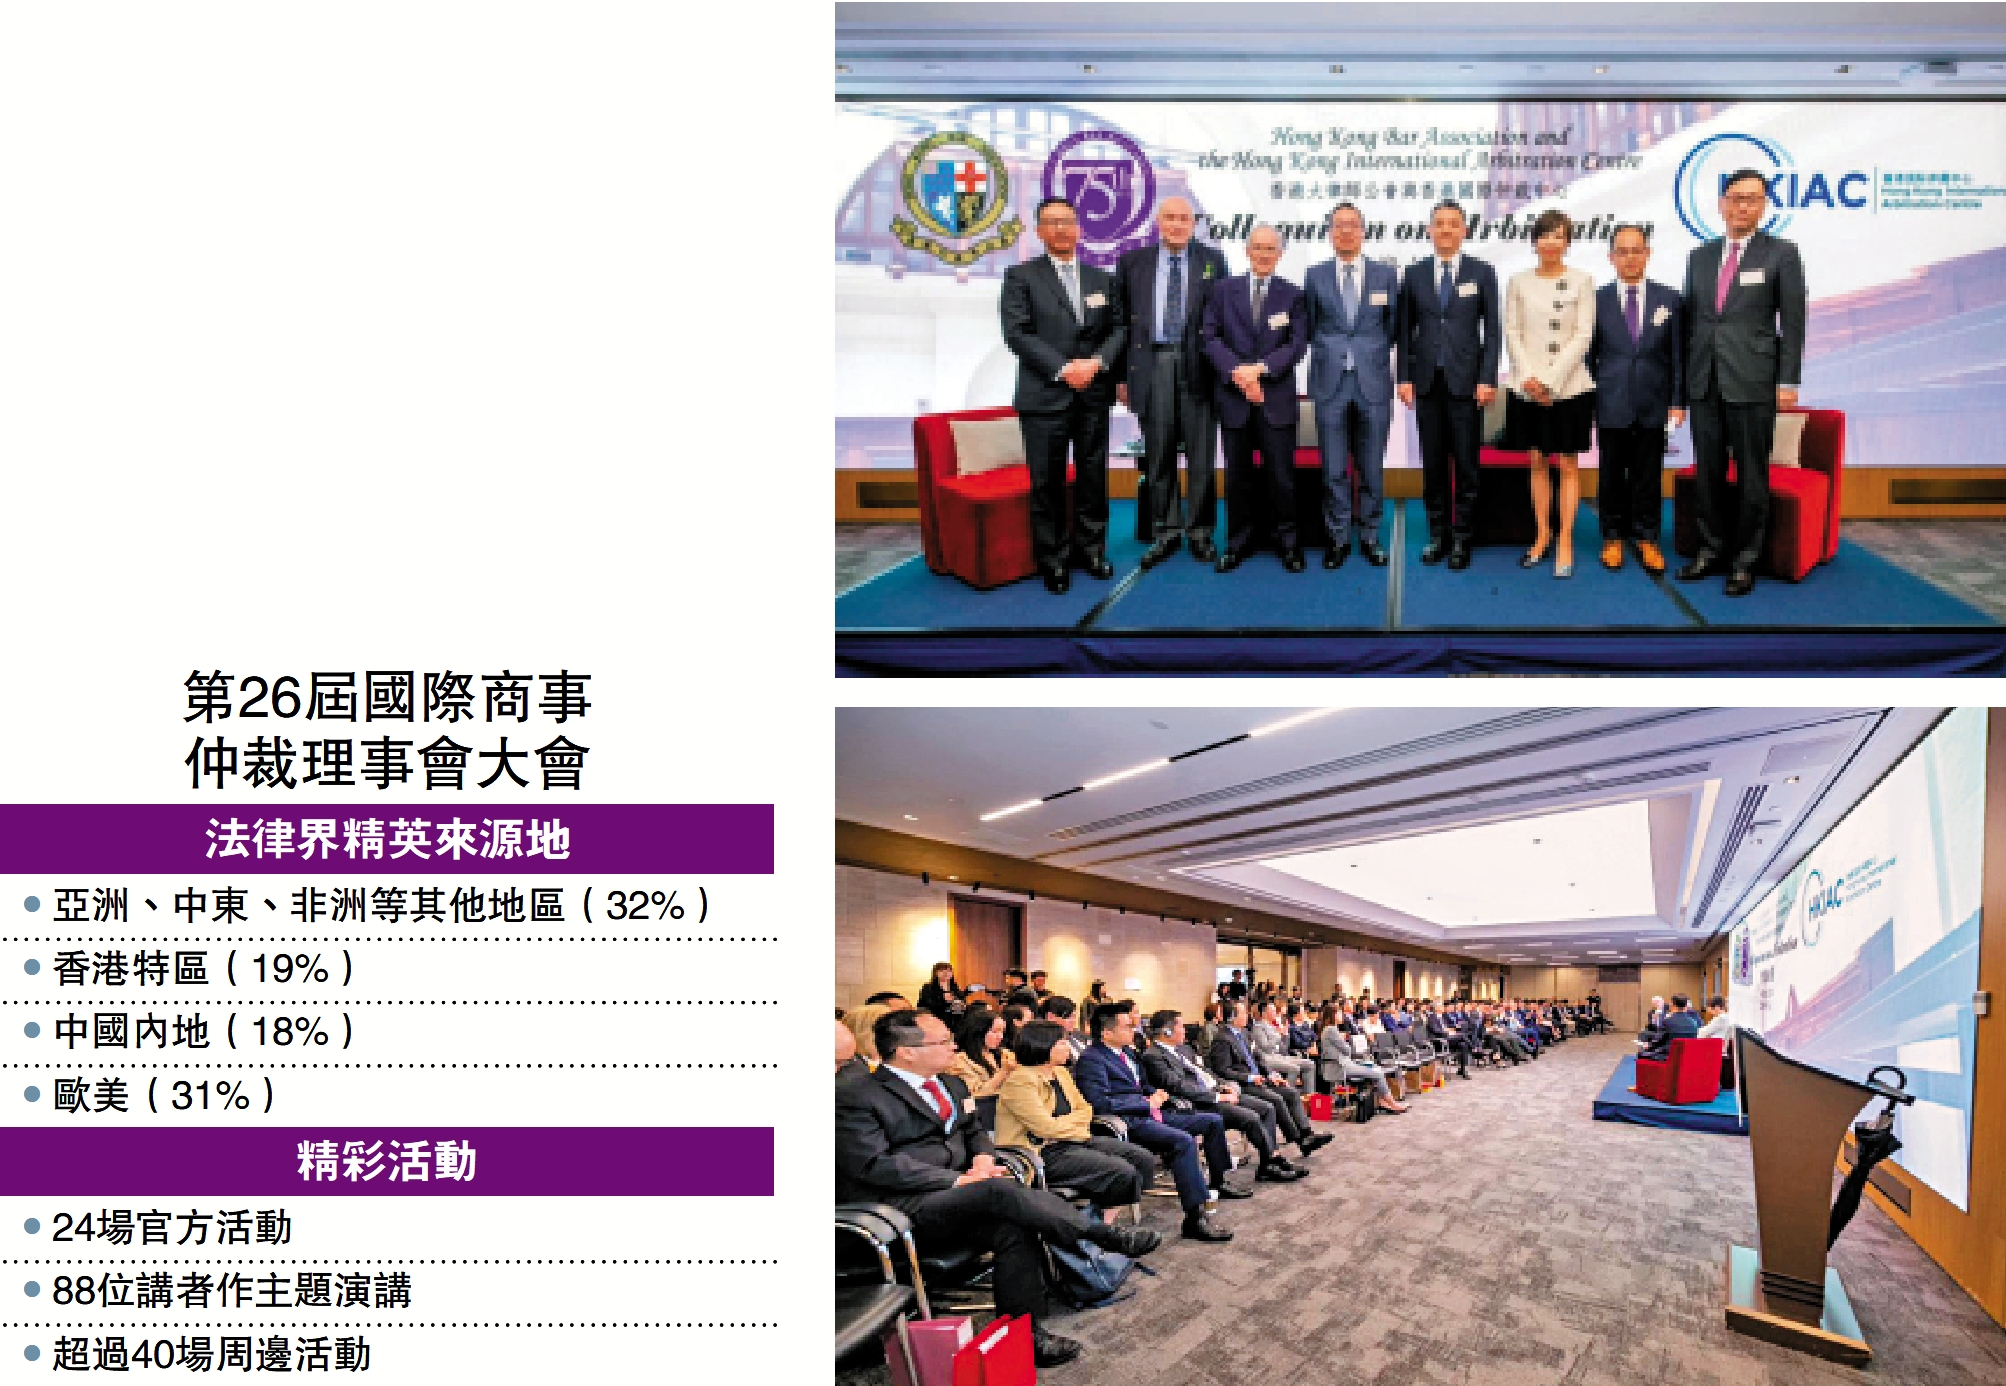 　　右上圖：香港大律師公會與香港國際仲裁中心合辦的仲裁論壇昨日在港舉行。右下圖：20個司法管轄區的近二百名國際法律精英參與了昨日的論壇。